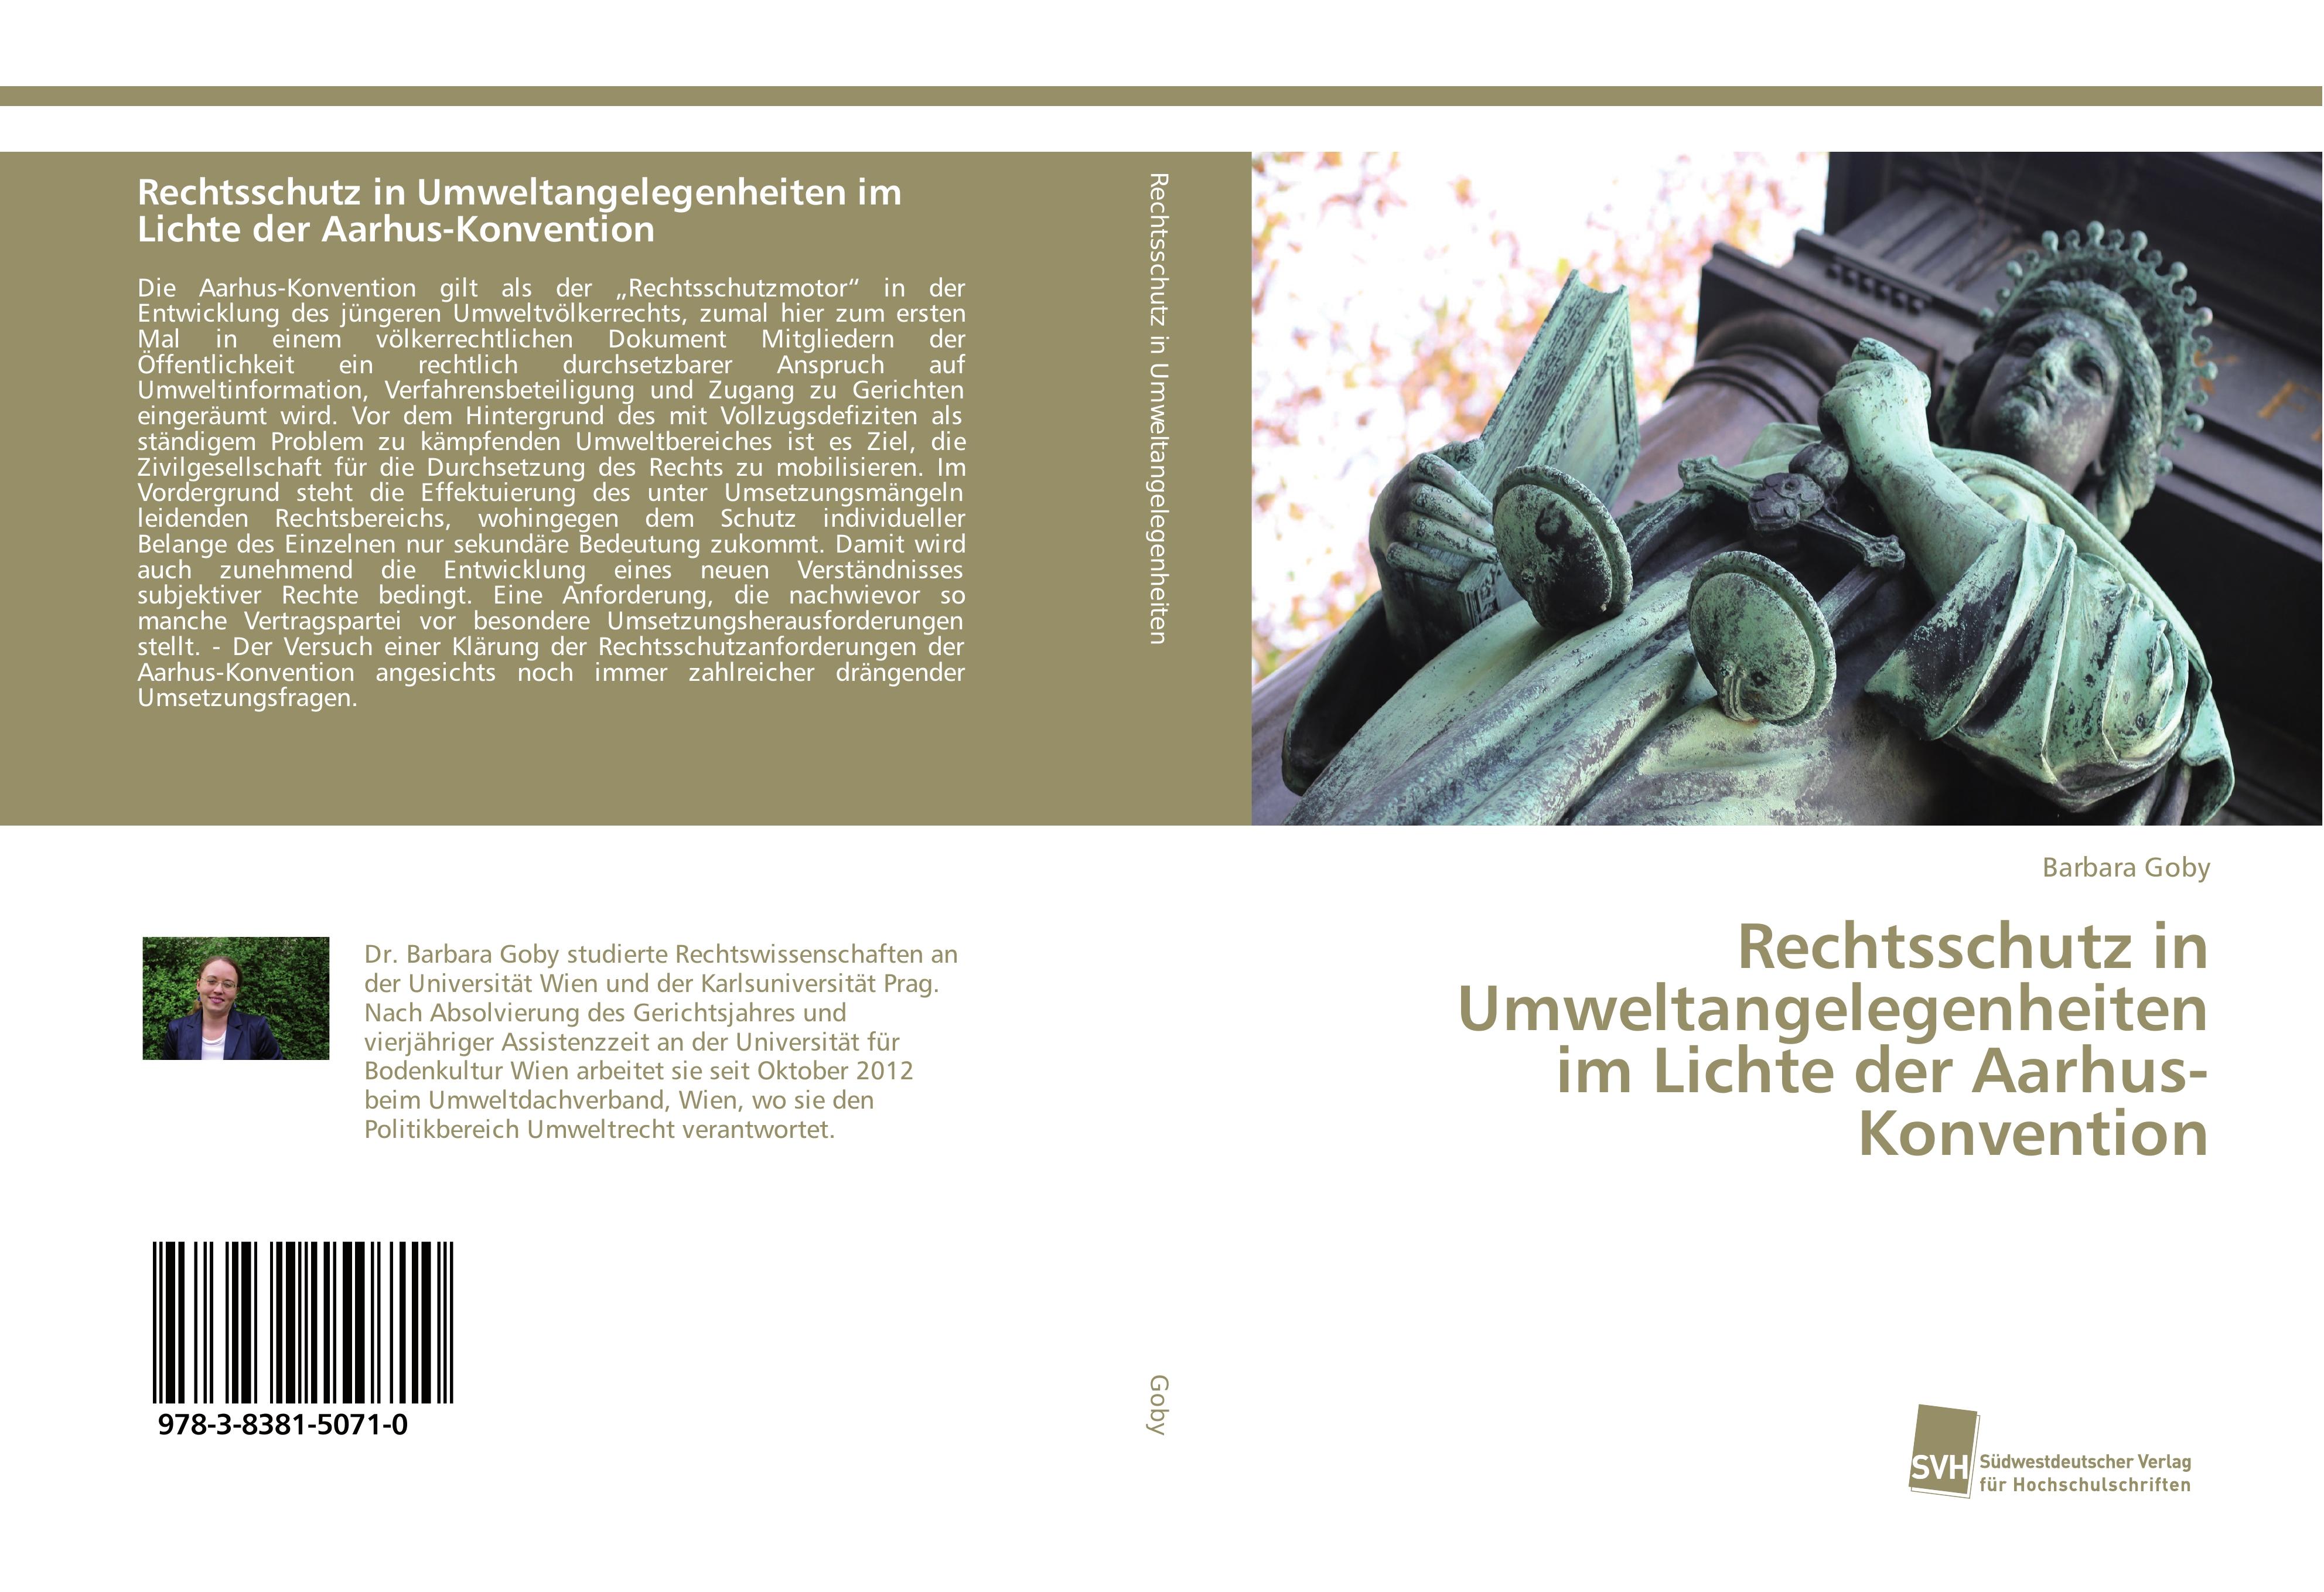 Rechtsschutz in Umweltangelegenheiten im Lichte der Aarhus-Konvention  Barbara Goby  Taschenbuch  Paperback  Deutsch  2015 - Goby, Barbara